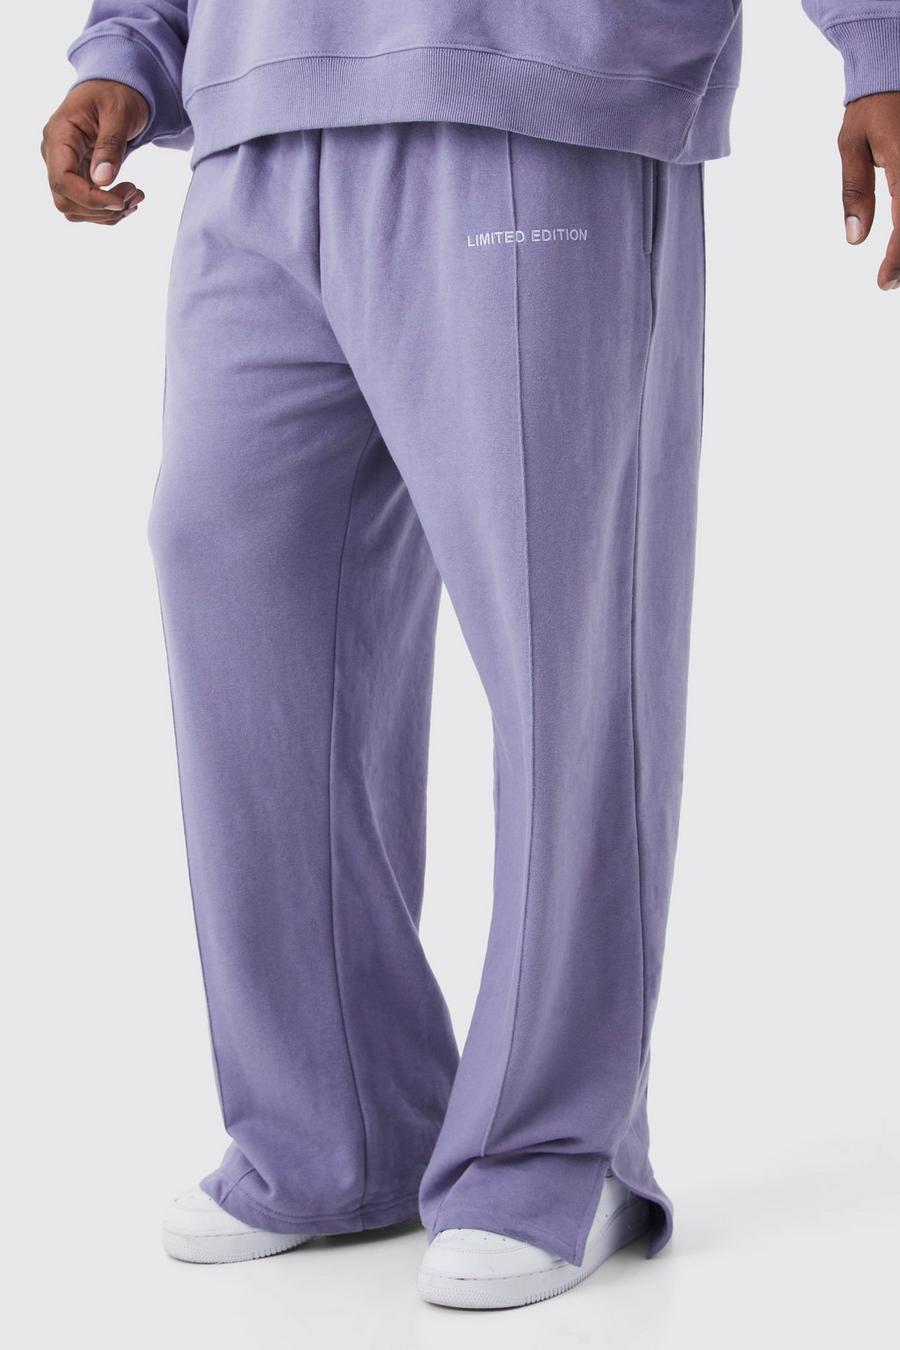 Pantaloni tuta pesanti Plus Size rilassati con spacco sul fondo, Lavender